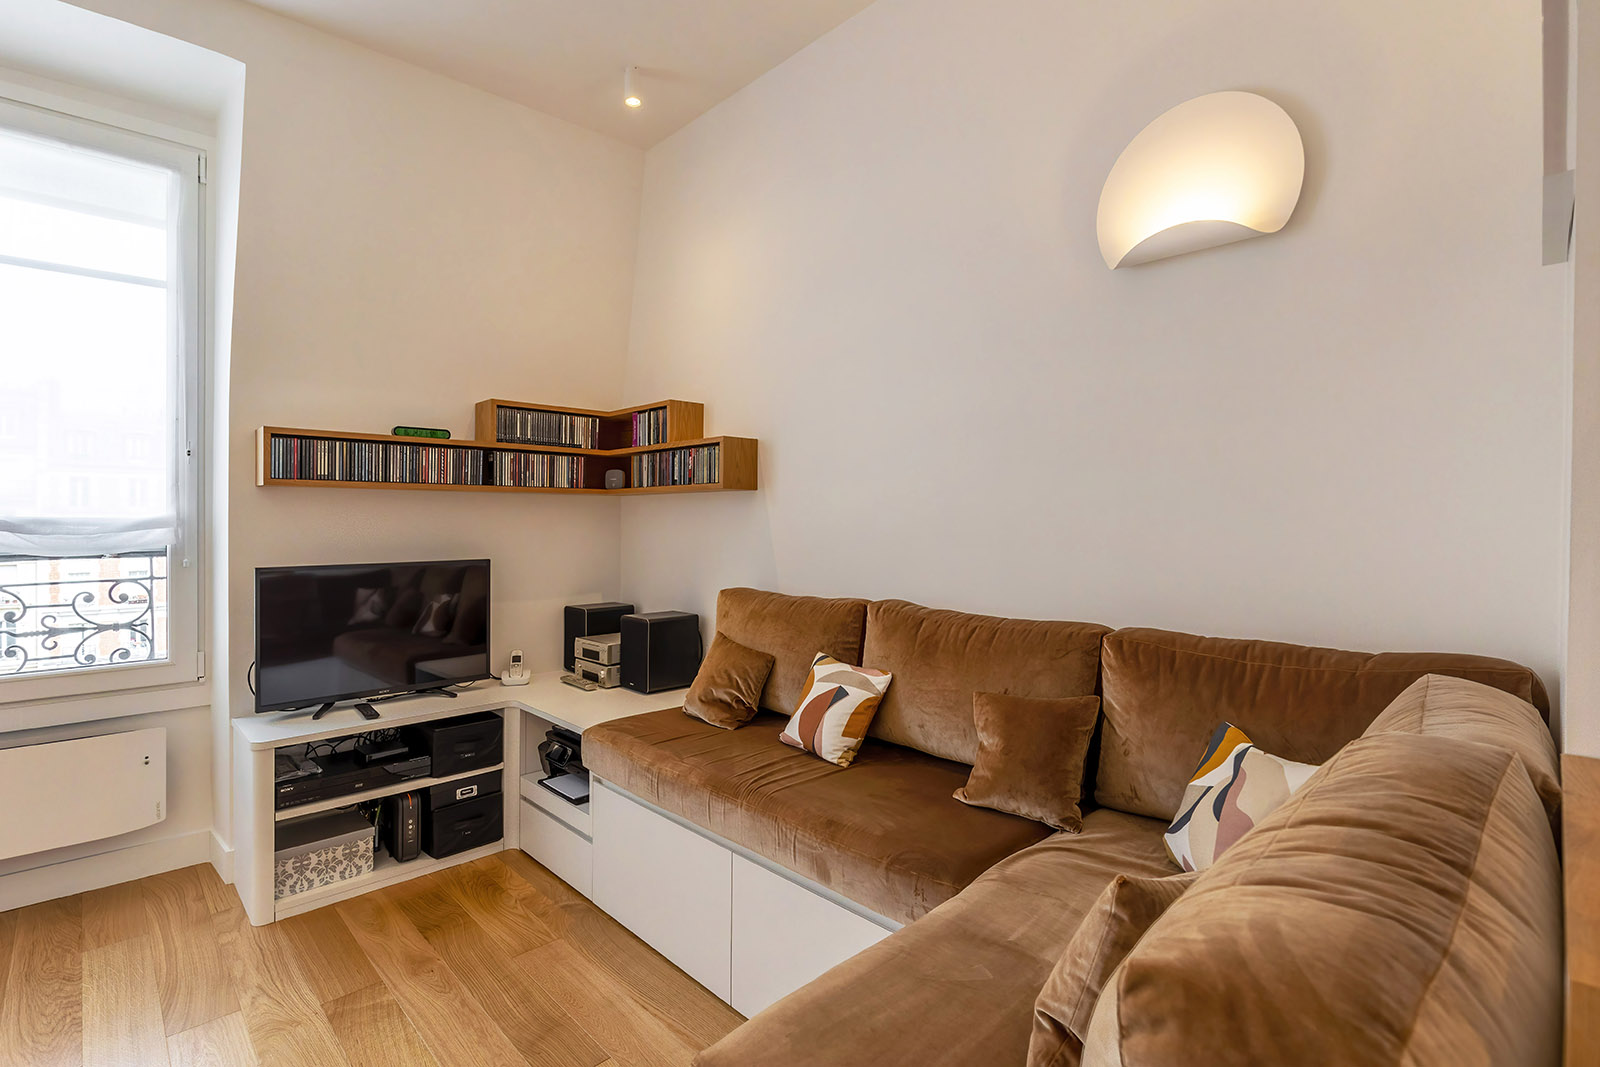 25 m2 tout confort - l'espace salon avec banquette et rangements sur-mesure - Flora Auvray Architecte d'intérieur